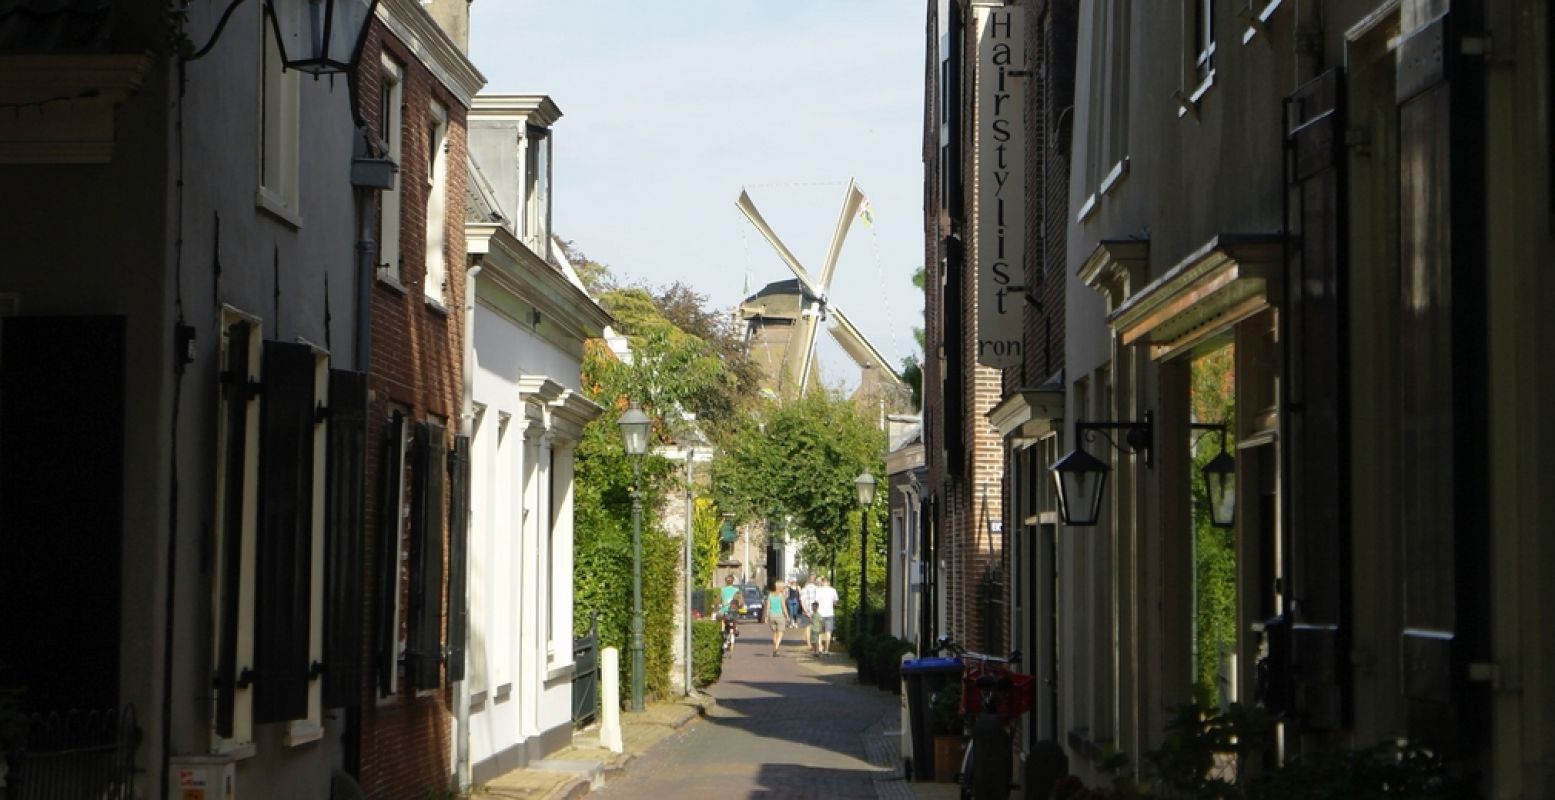 Een kijkje richting Korenmolen De Hoop in Loenen. Foto: DagjeWeg.NL © Tonny van Oosten